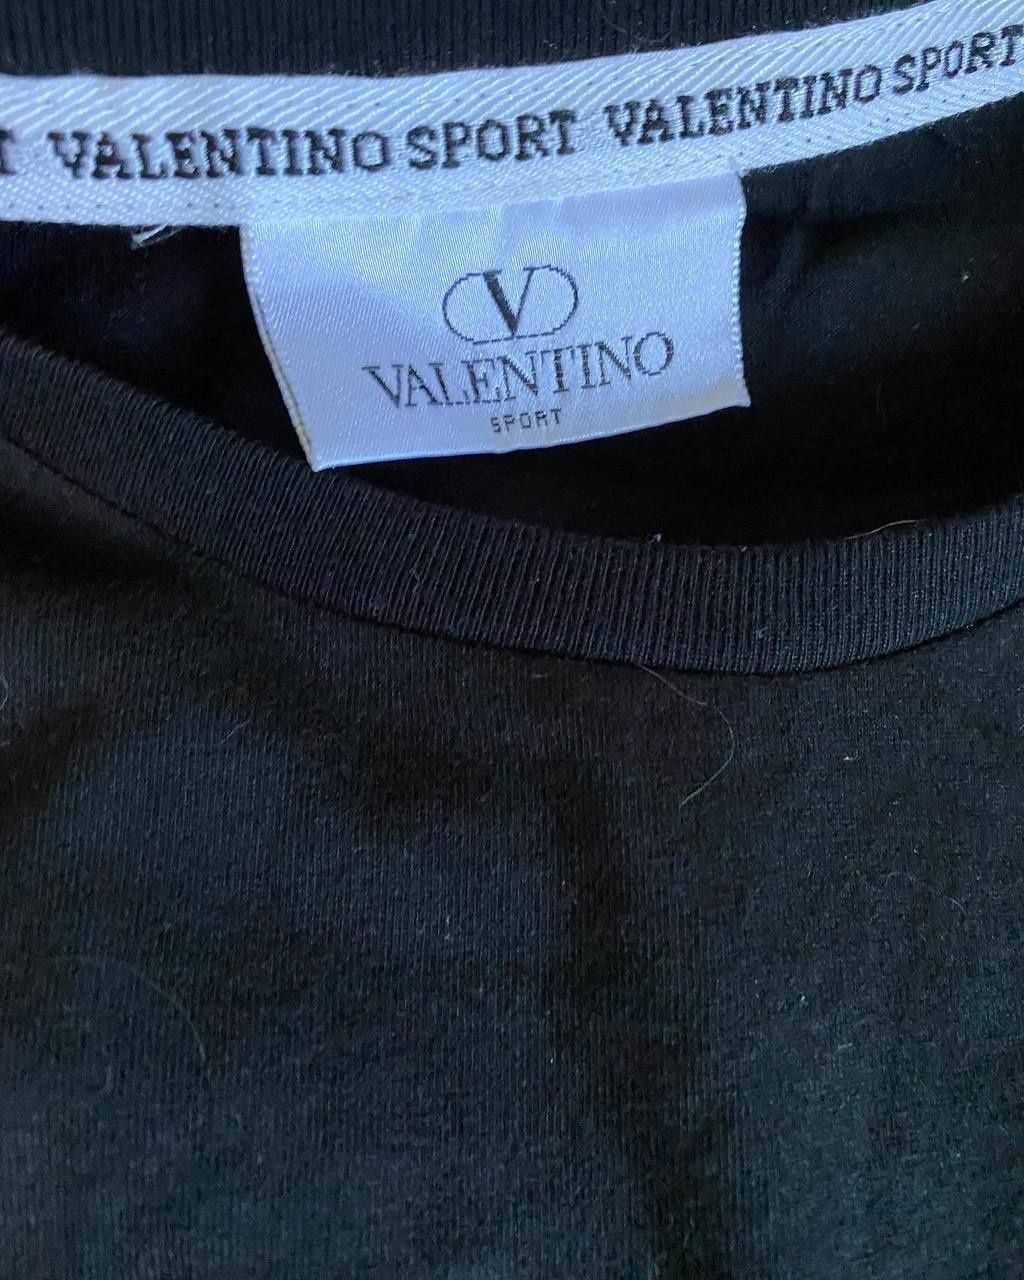 Футболка Valentino ціна 600 на 3 дні